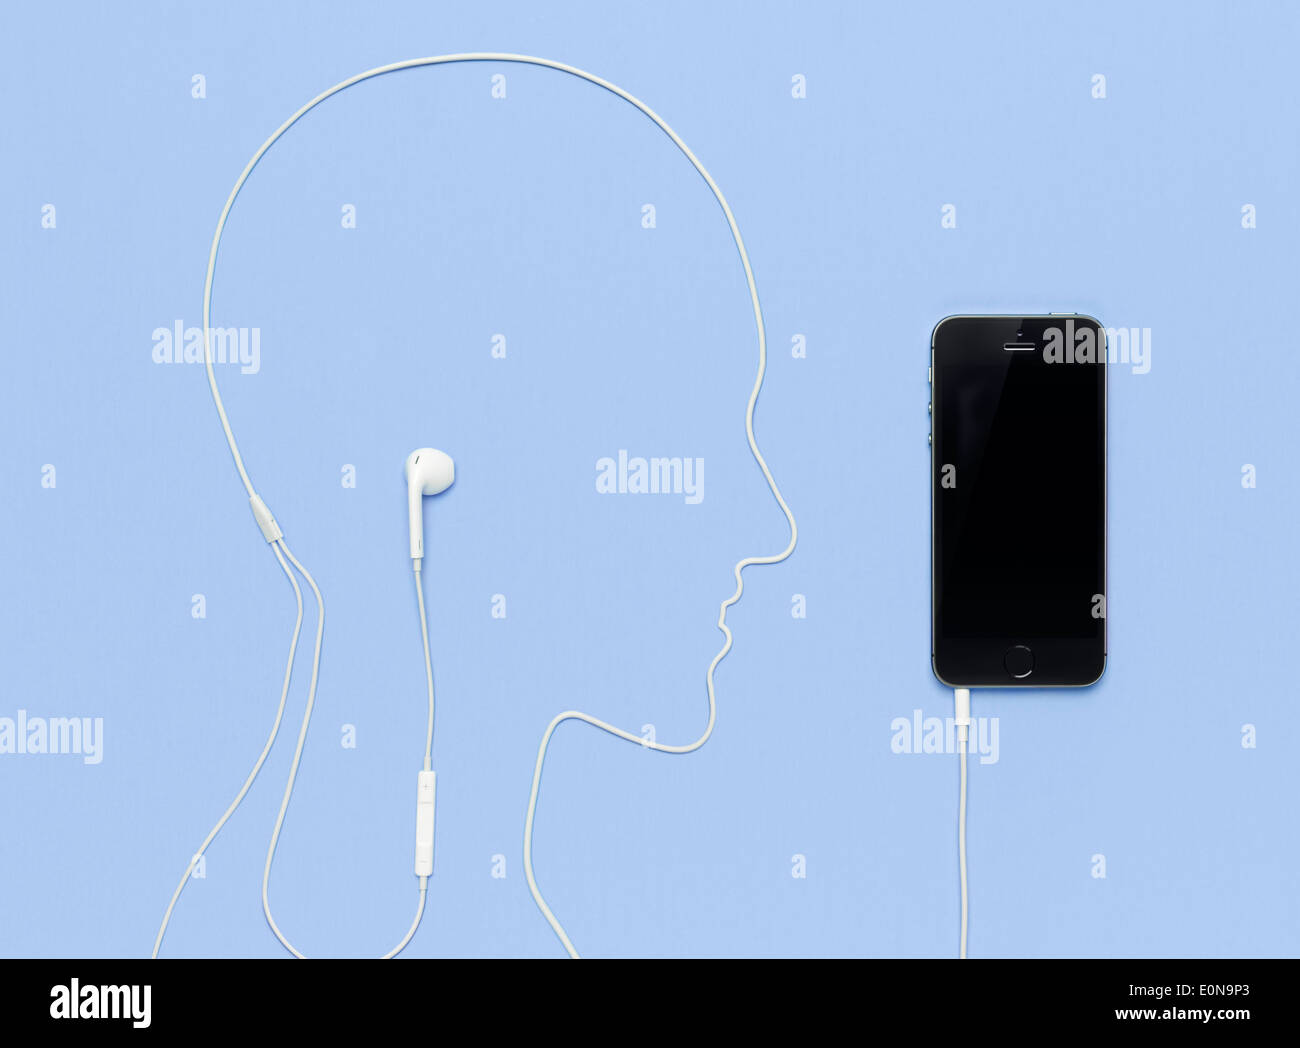 Cabeza de hombre hecha por un esquema del cable de los auriculares enchufados en iPhone 5s smartphone. Concepto de música creativa sobre fondo azul. Foto de stock